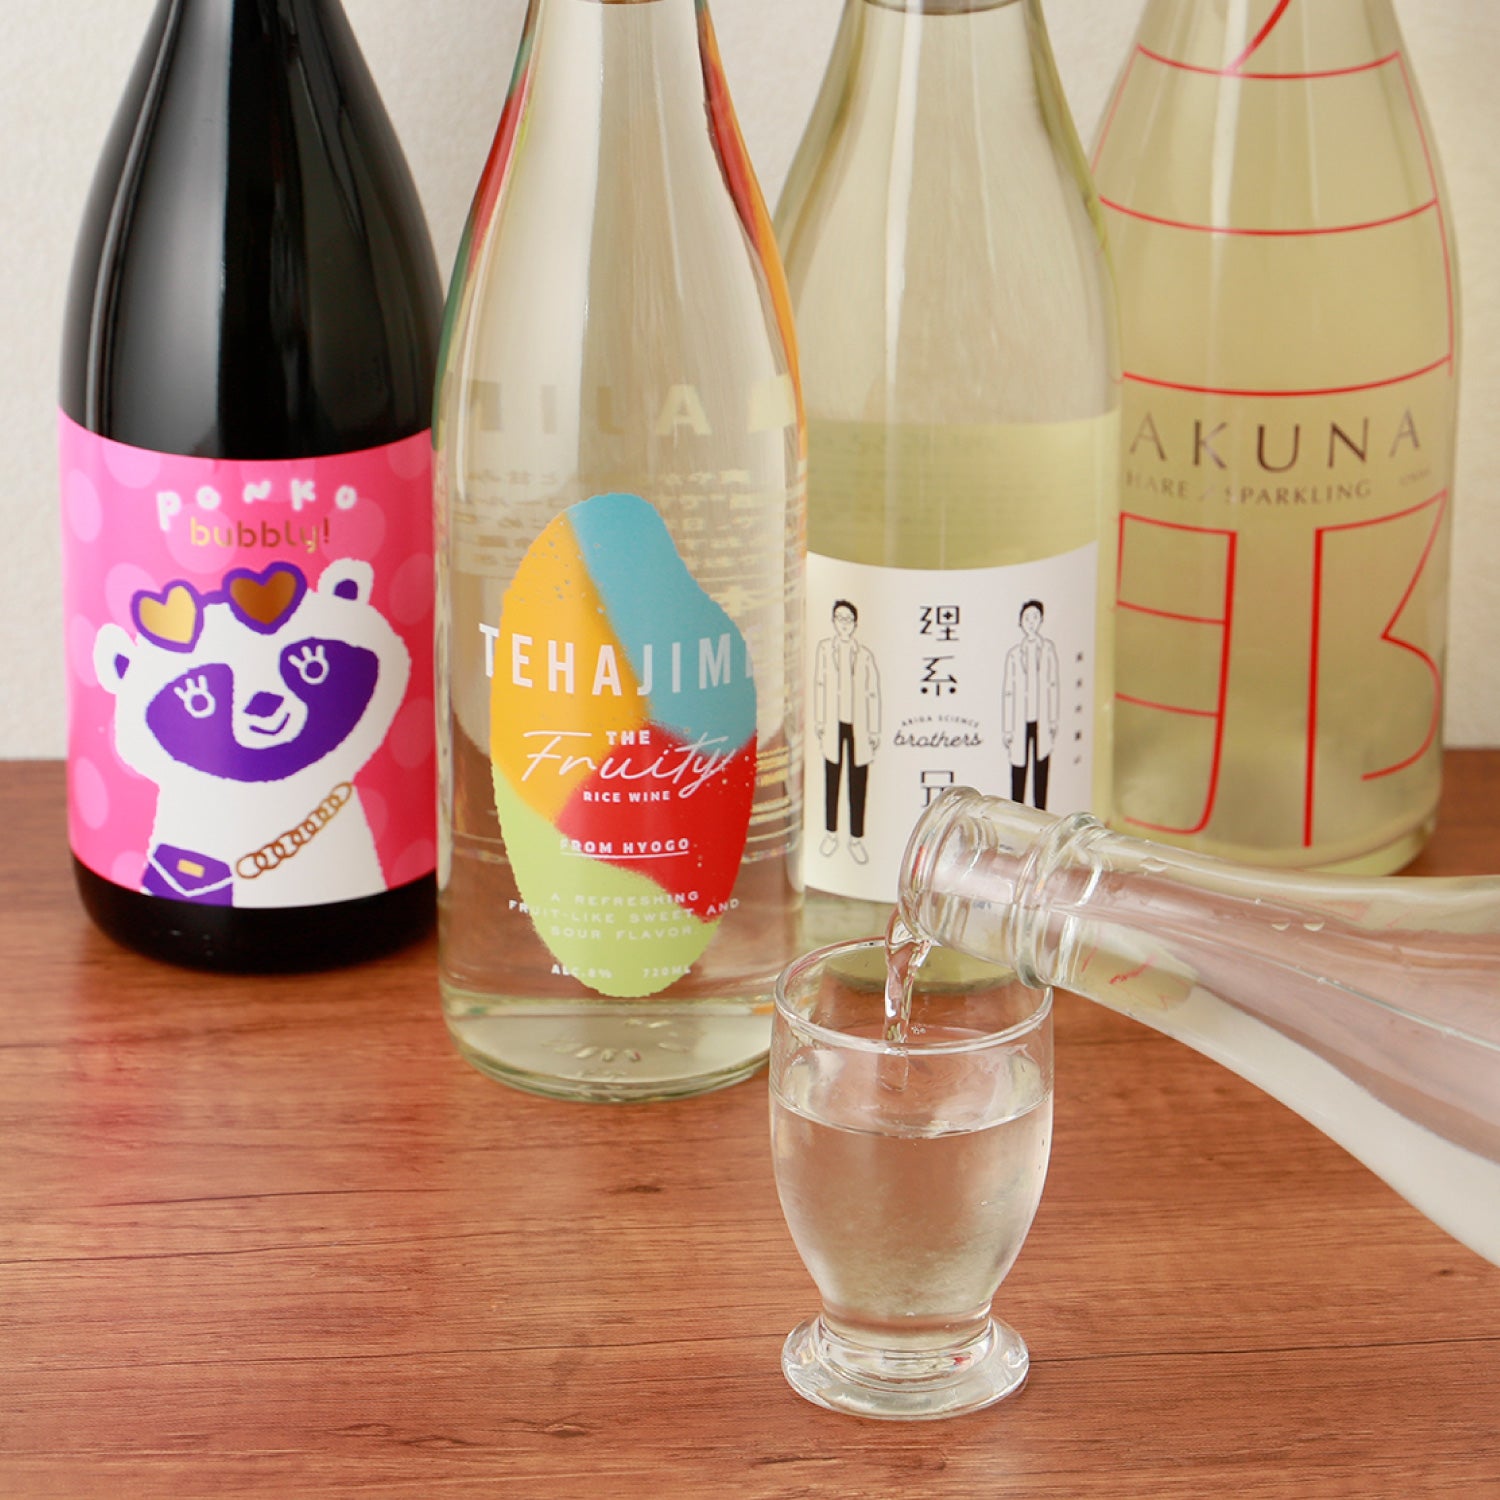 【再入荷定番】日本酒4本セット 日本酒